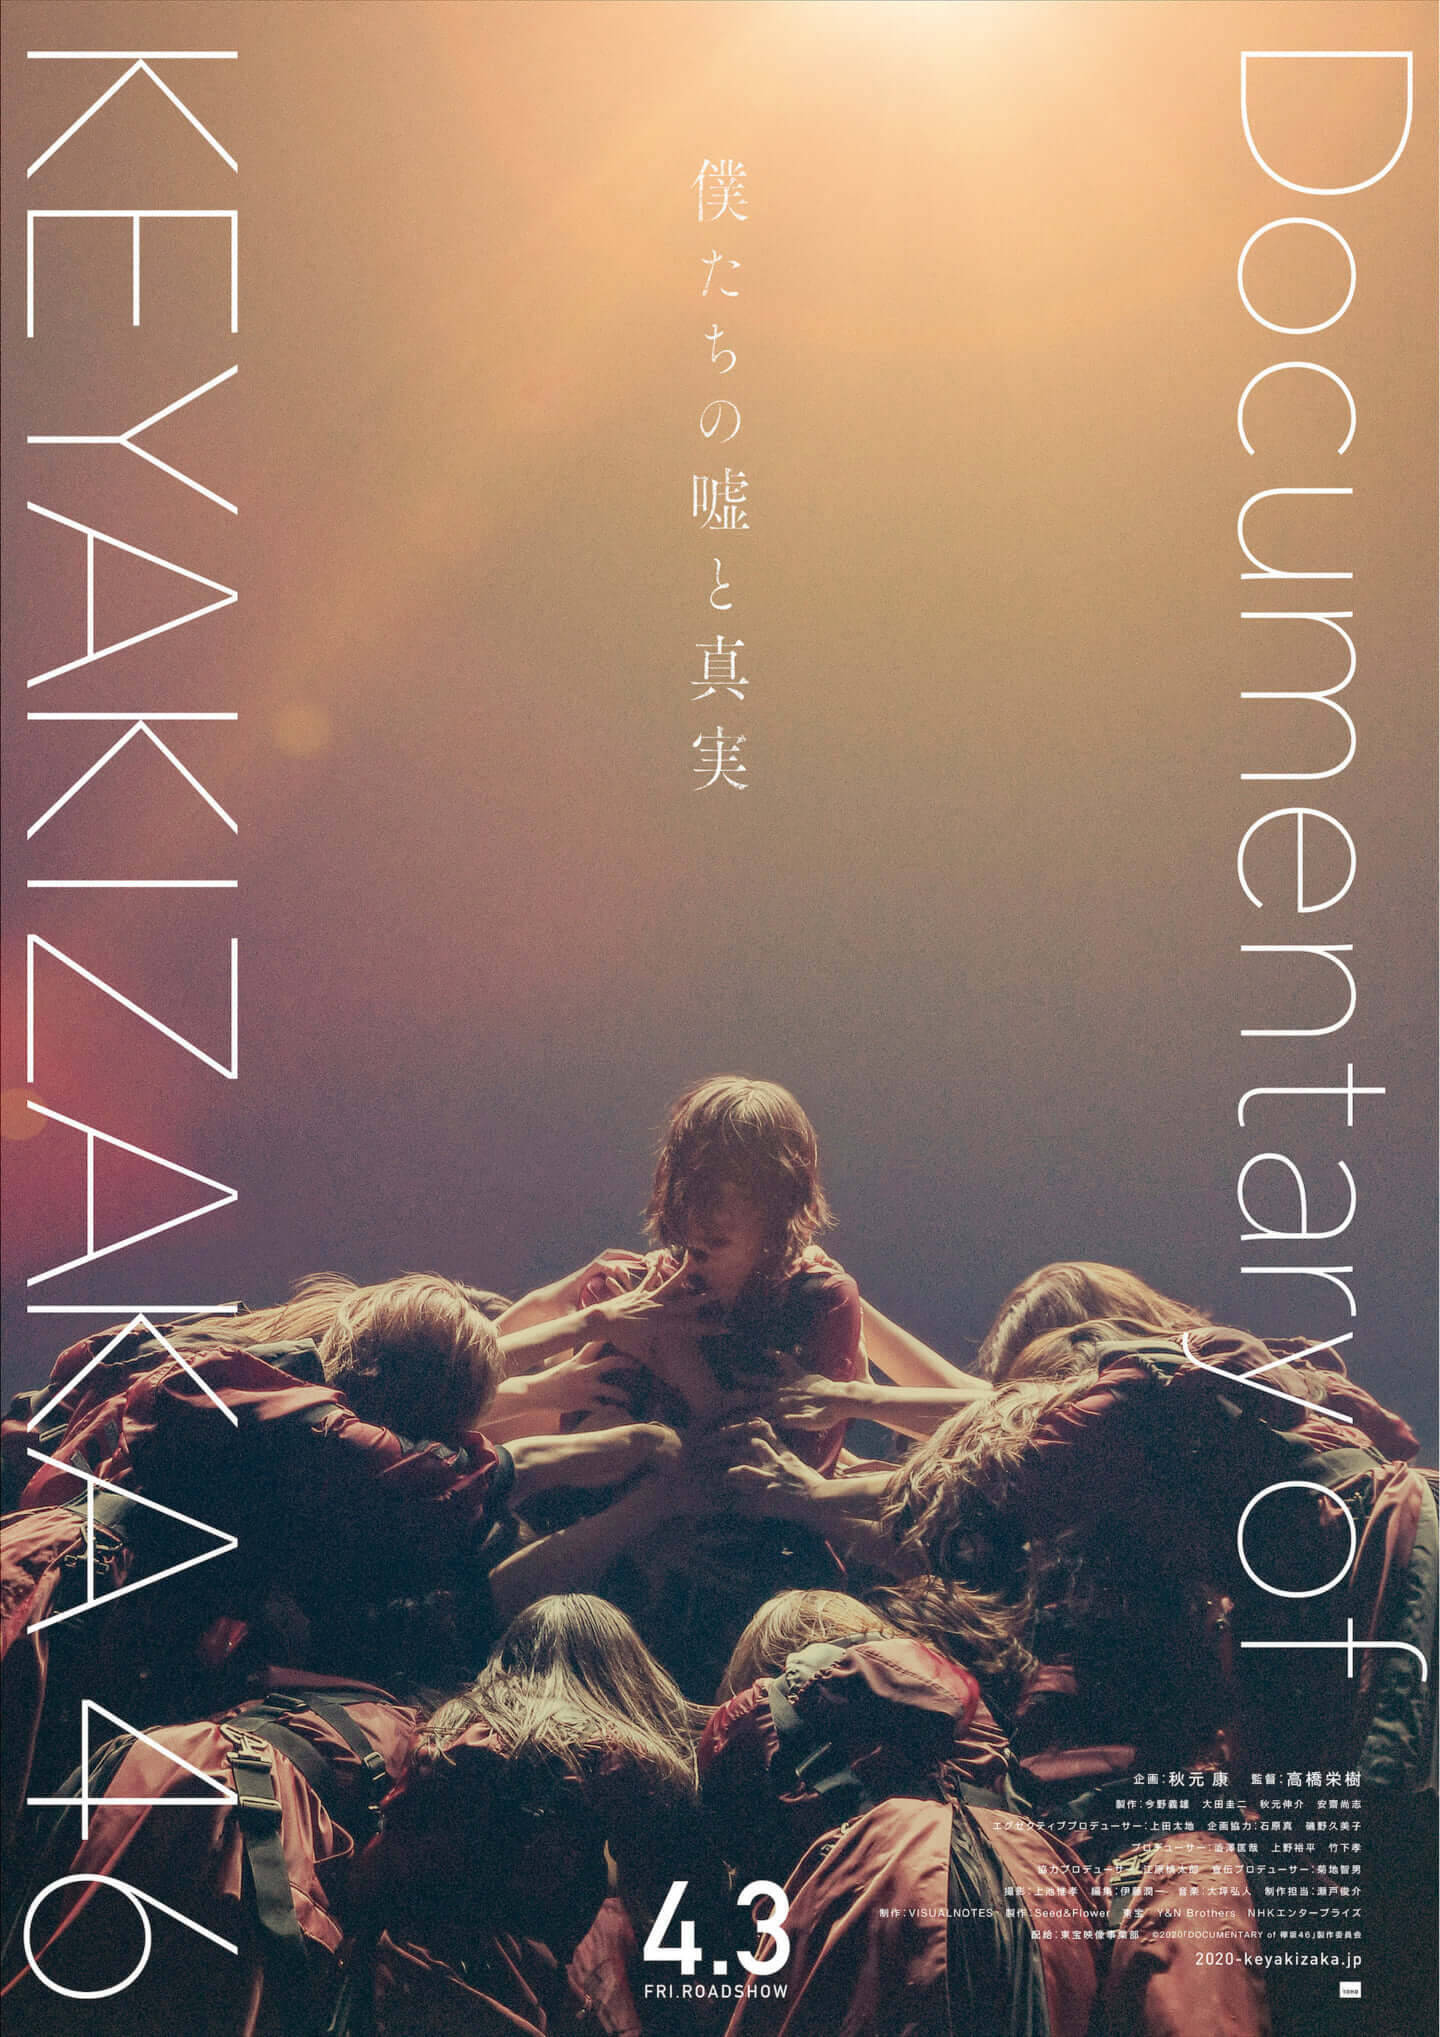 欅坂46の 今 がここに ドキュメンタリー映画 僕たちの嘘と真実 Documentary Of 欅坂46 公開決定 予告編解禁 年2月27日 エキサイトニュース